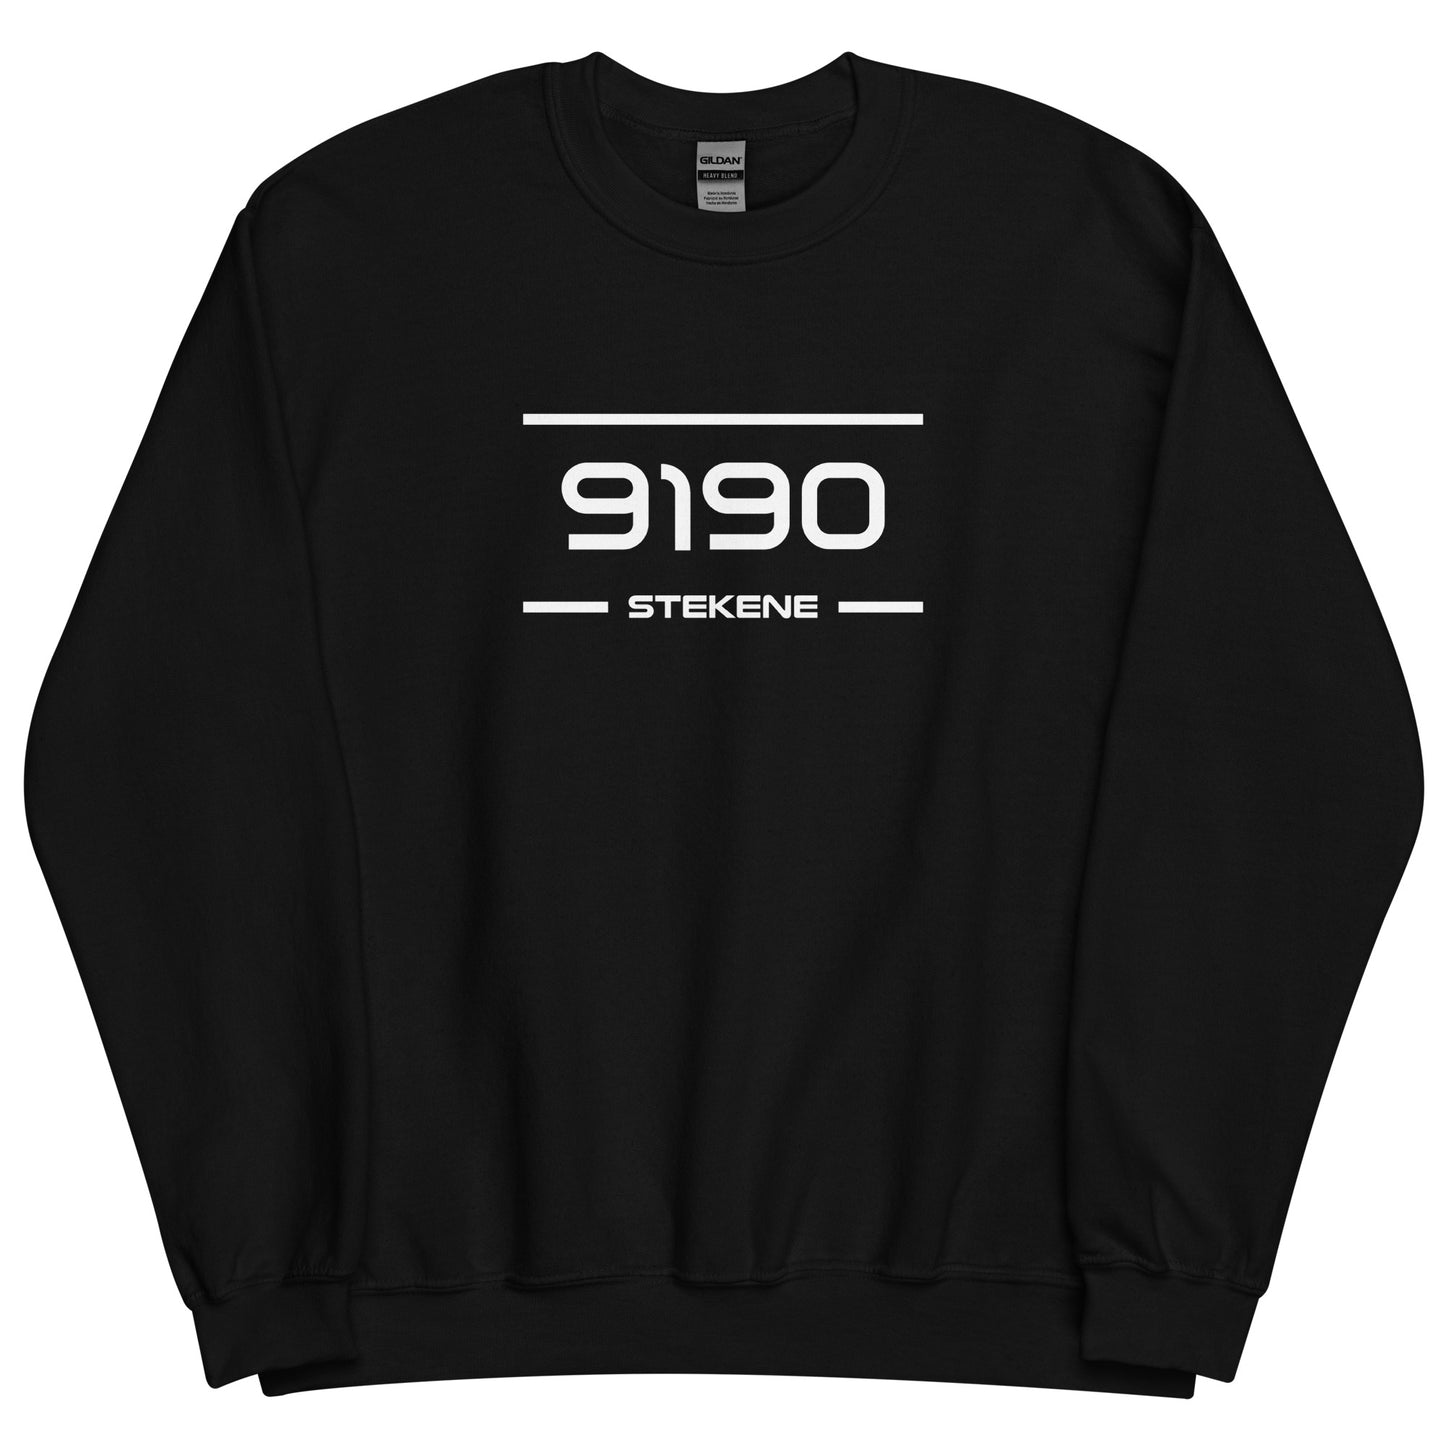 Sweater - 9190 - Stekene (M/V)